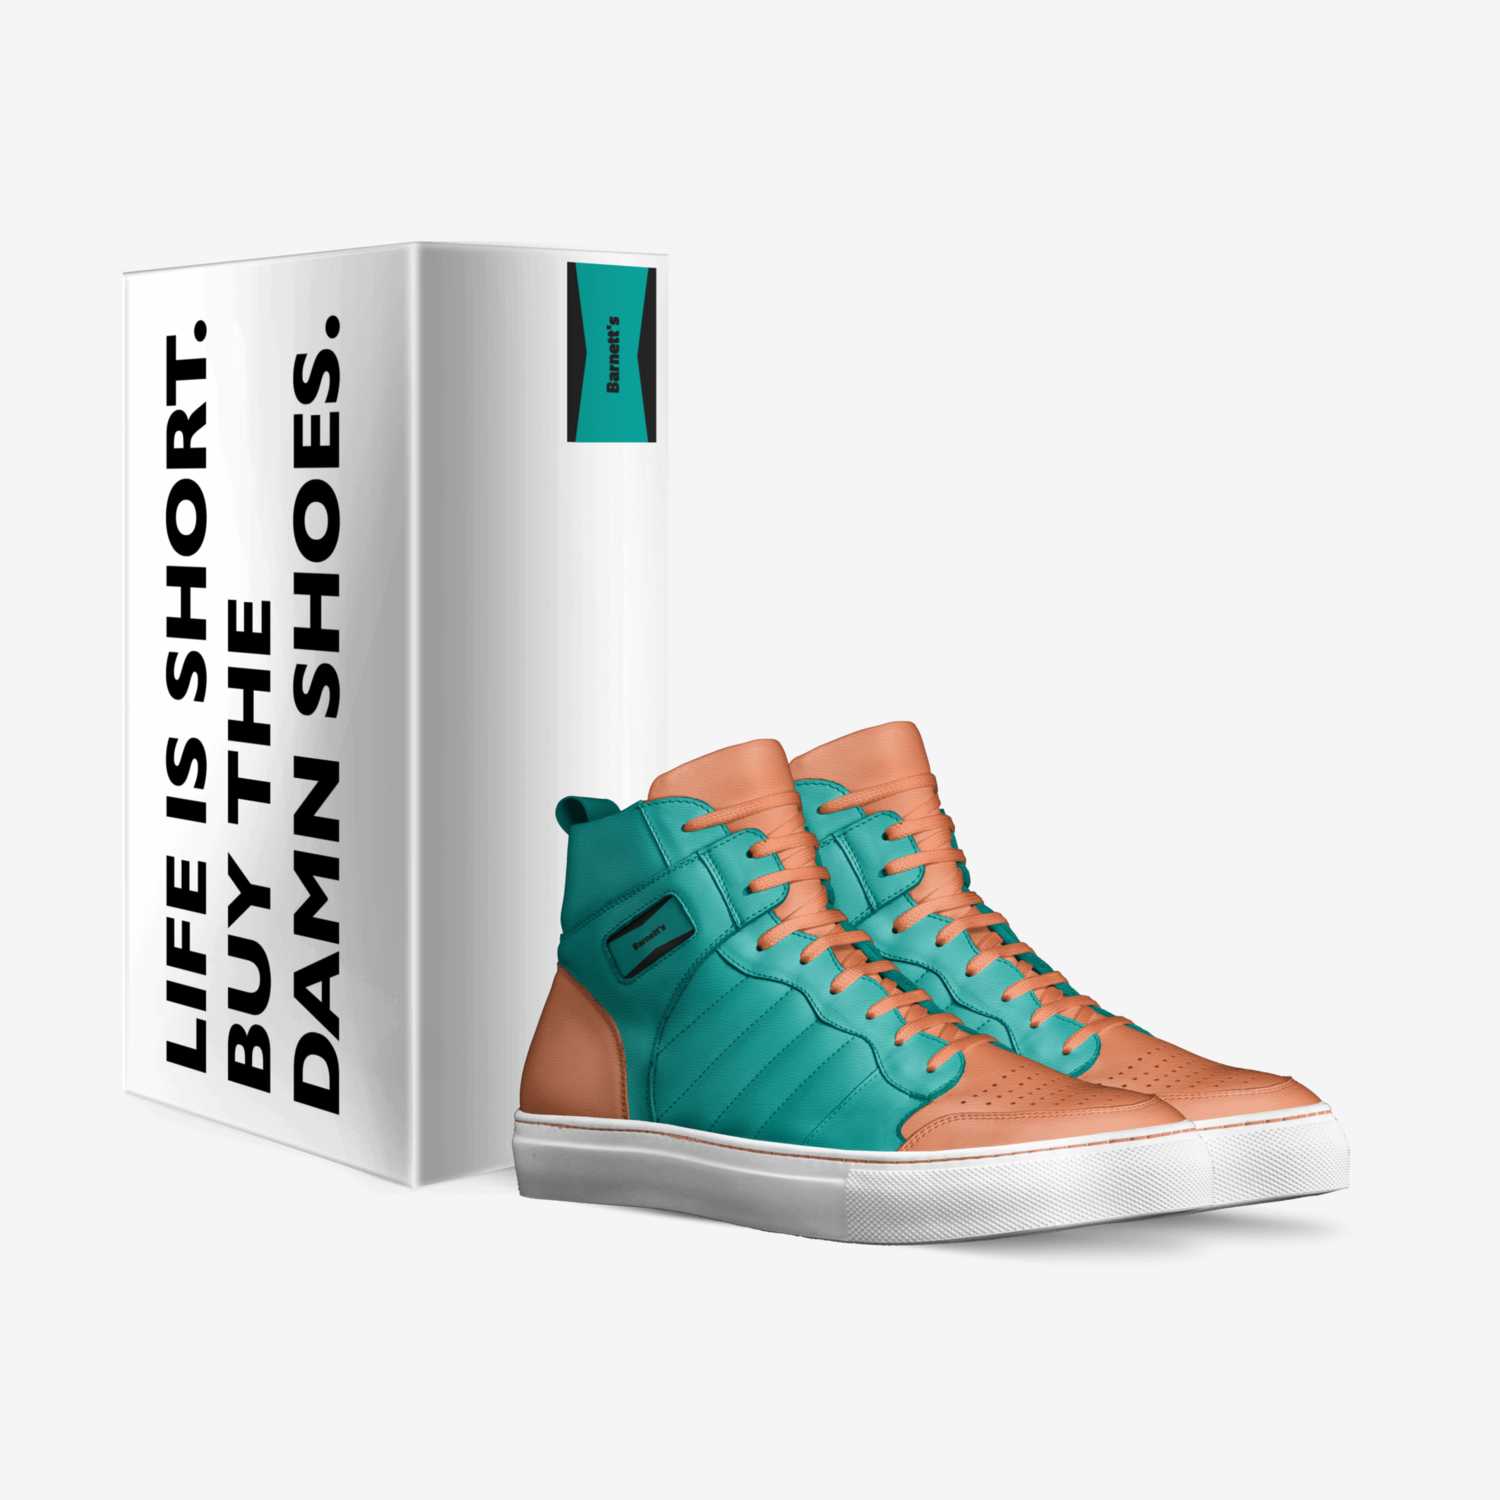 Barnett's custom made in Italy shoes by Kaden Barnett | Box view